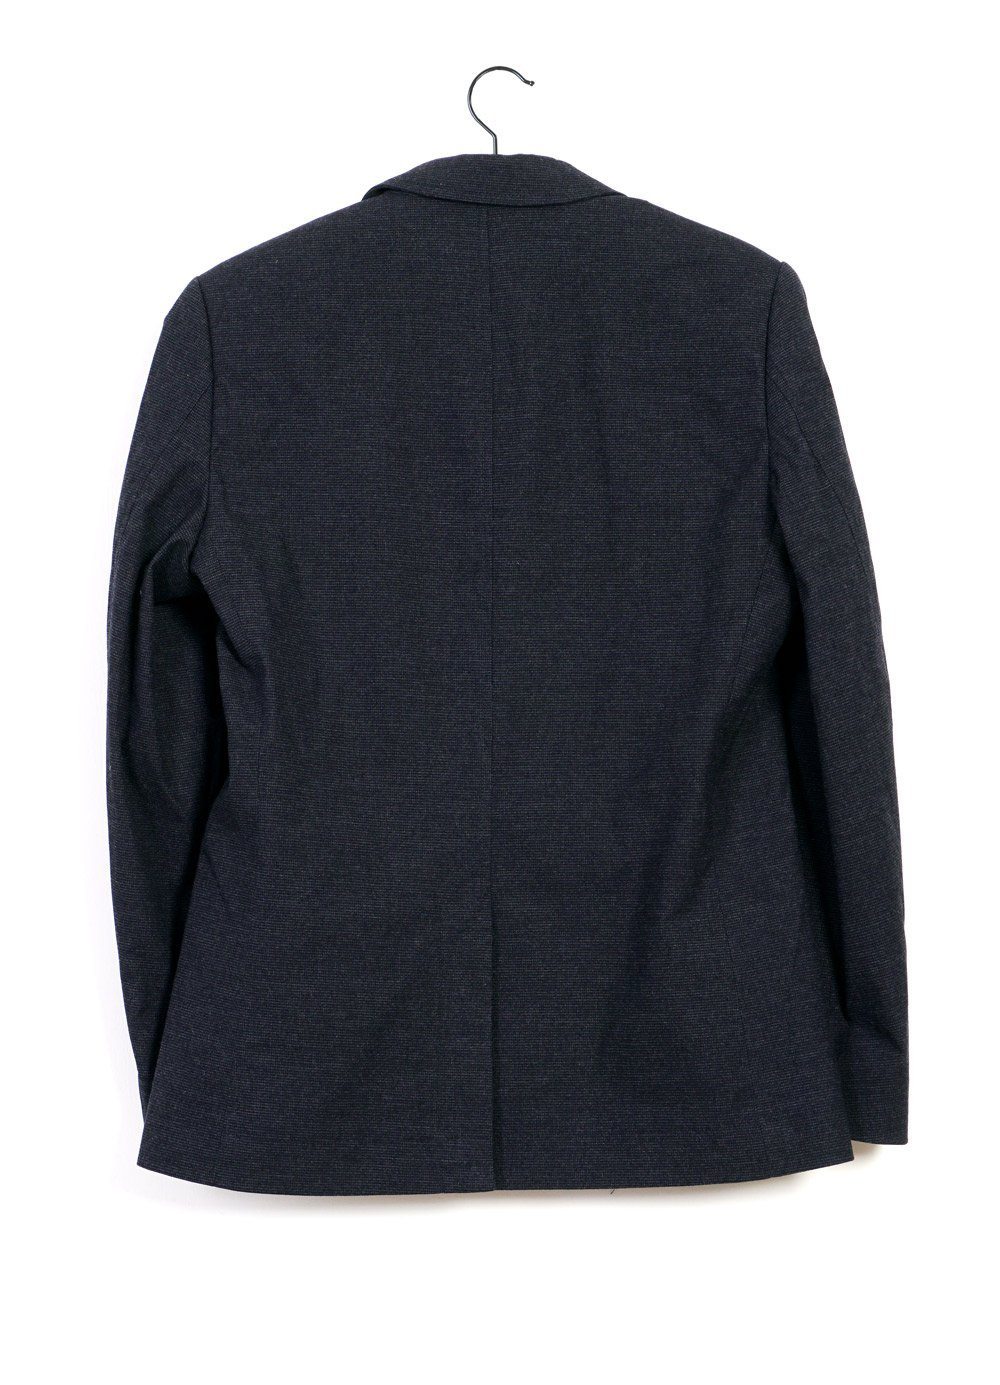 HANSEN Garments - CHRISTOFFER | Classic Two Button Blazer | Fjord - HANSEN Garments